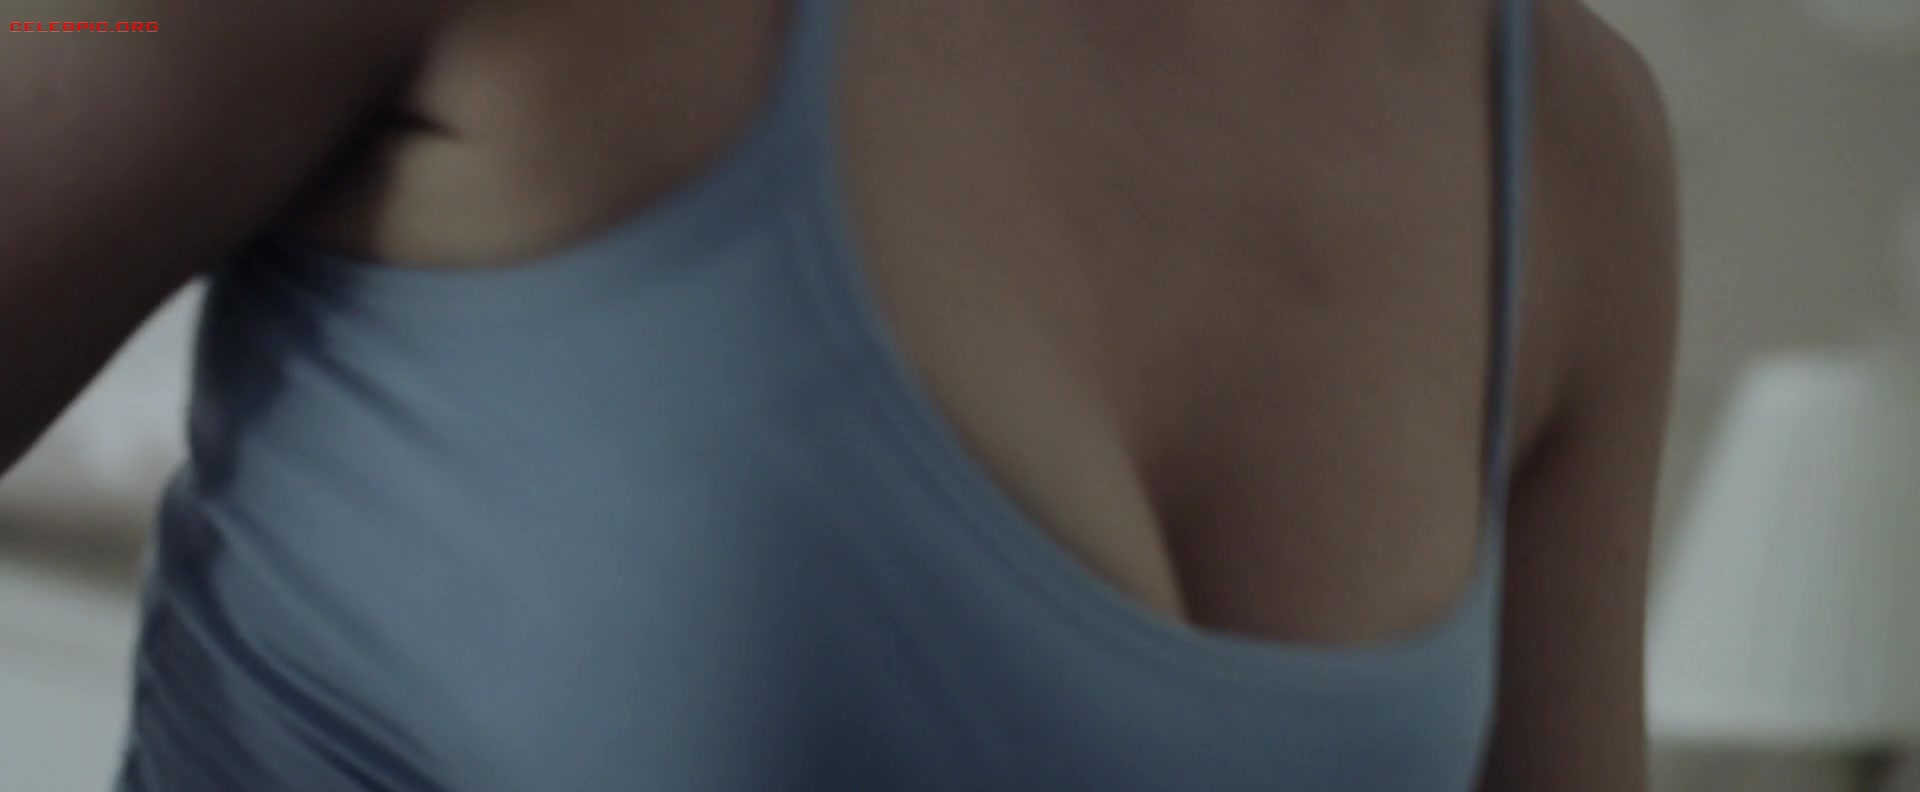 Gemma Arterton - The Escape 1080p (1) 0412.jpg